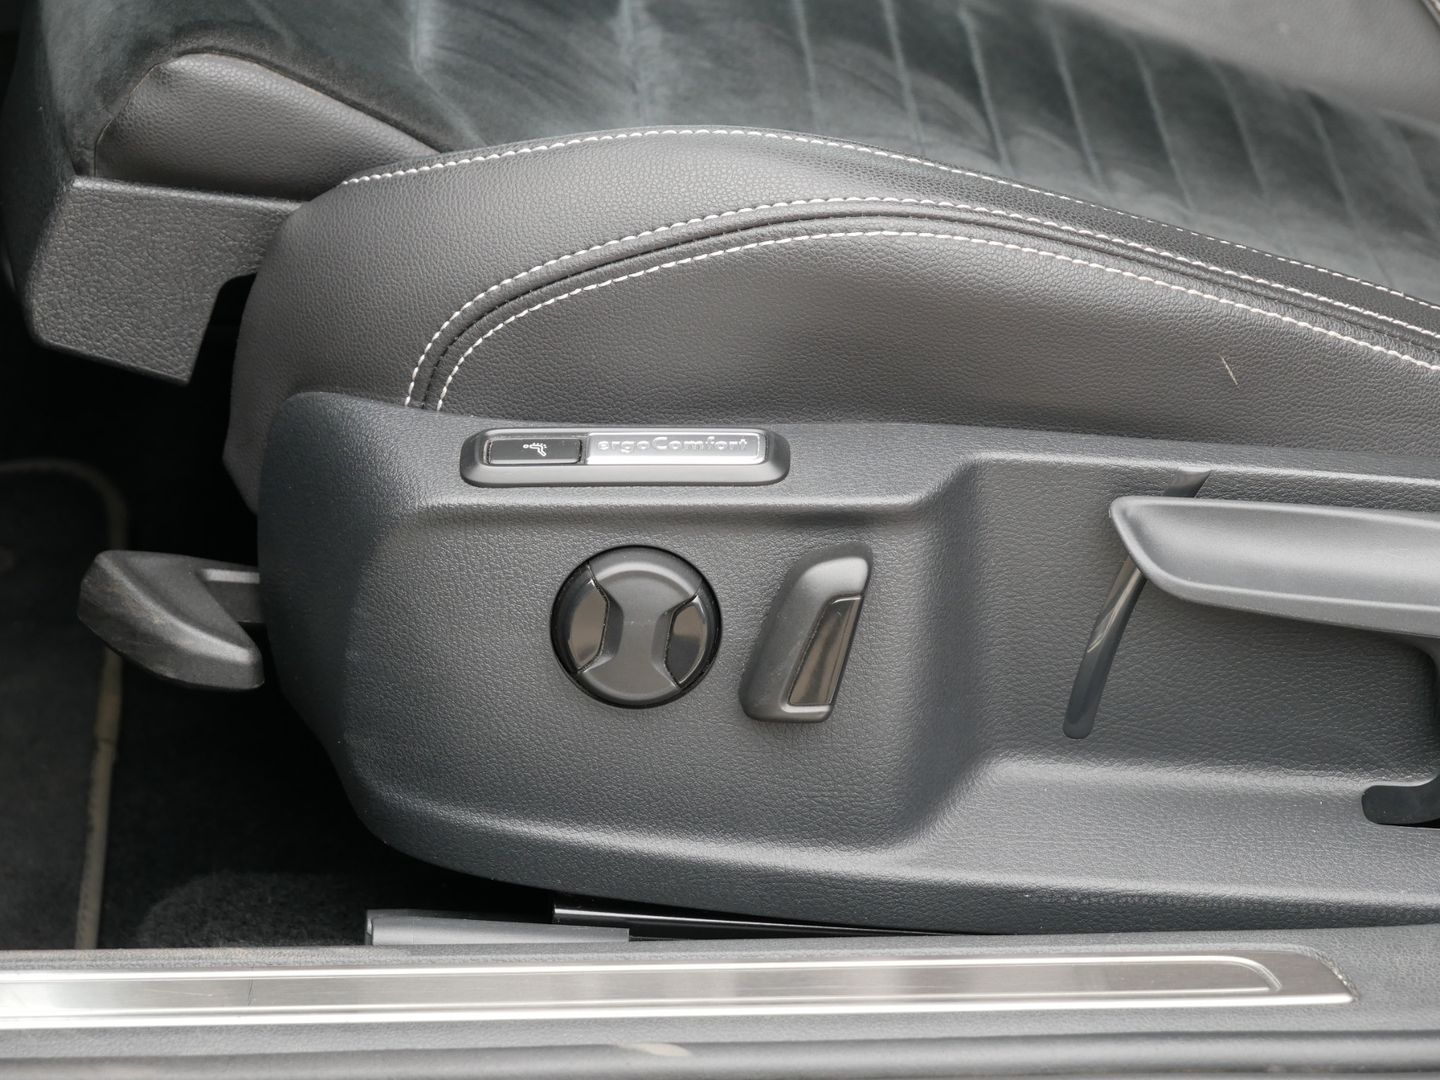 Volkswagen Passat 2.0 TDI 110 kW Elegance